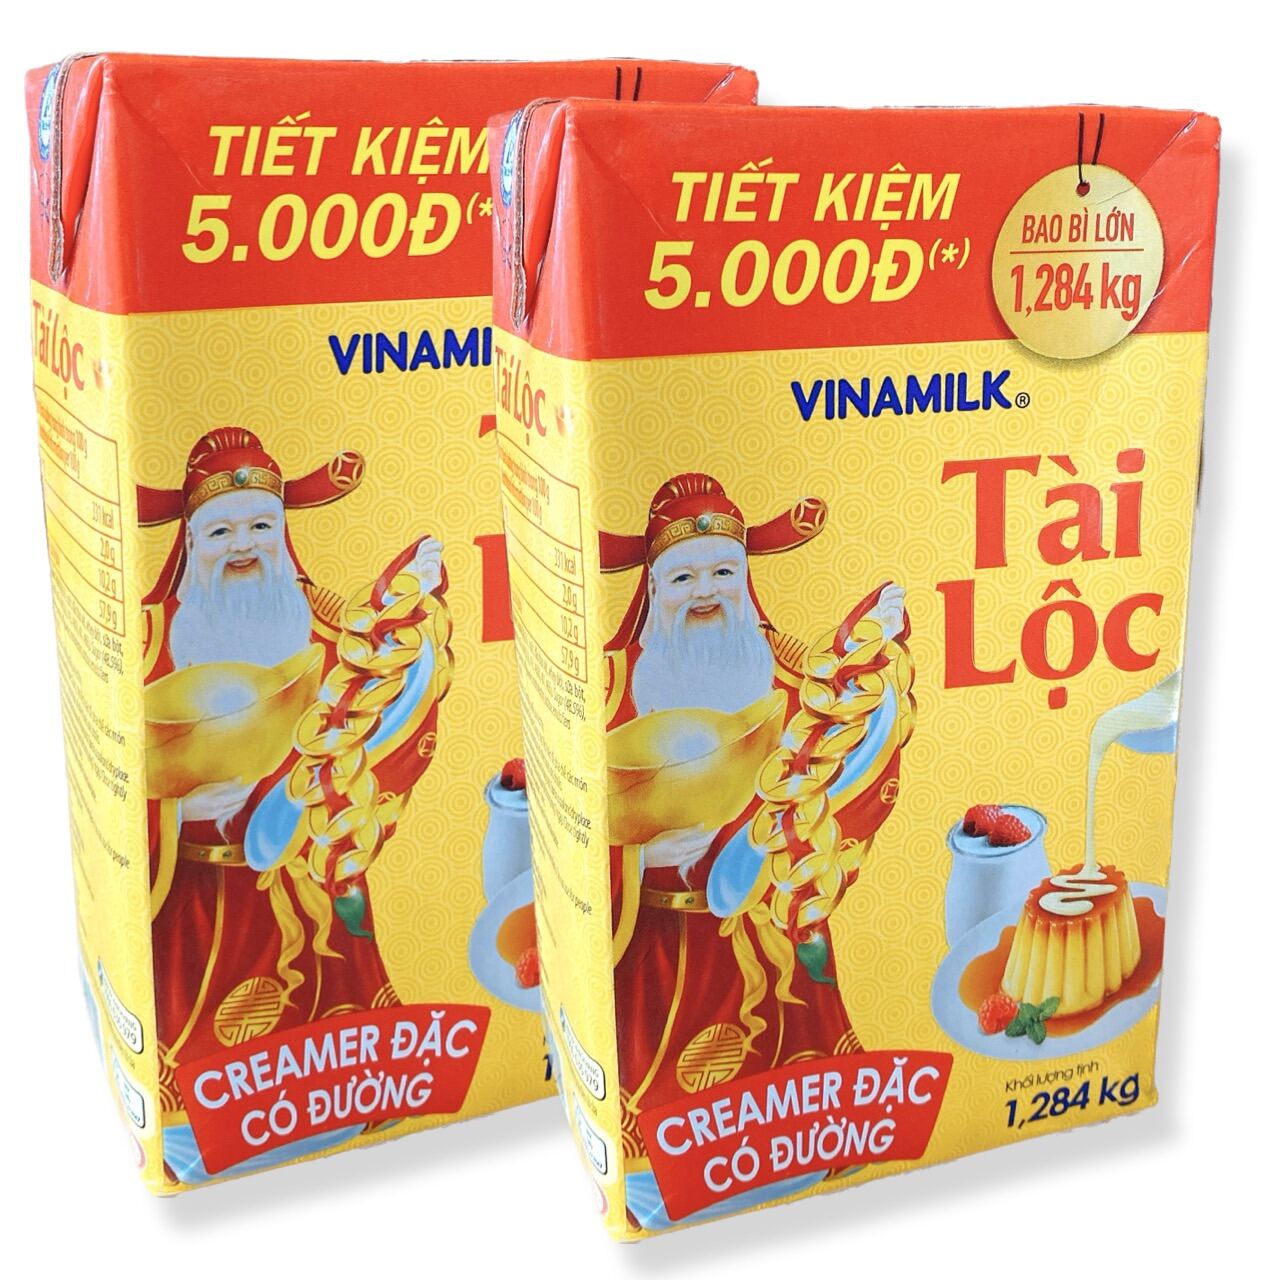 Combo 2 hộp sữa  mỗi hộp 1,284kg sữa đặc có đường nguyên kem Tài Lộc